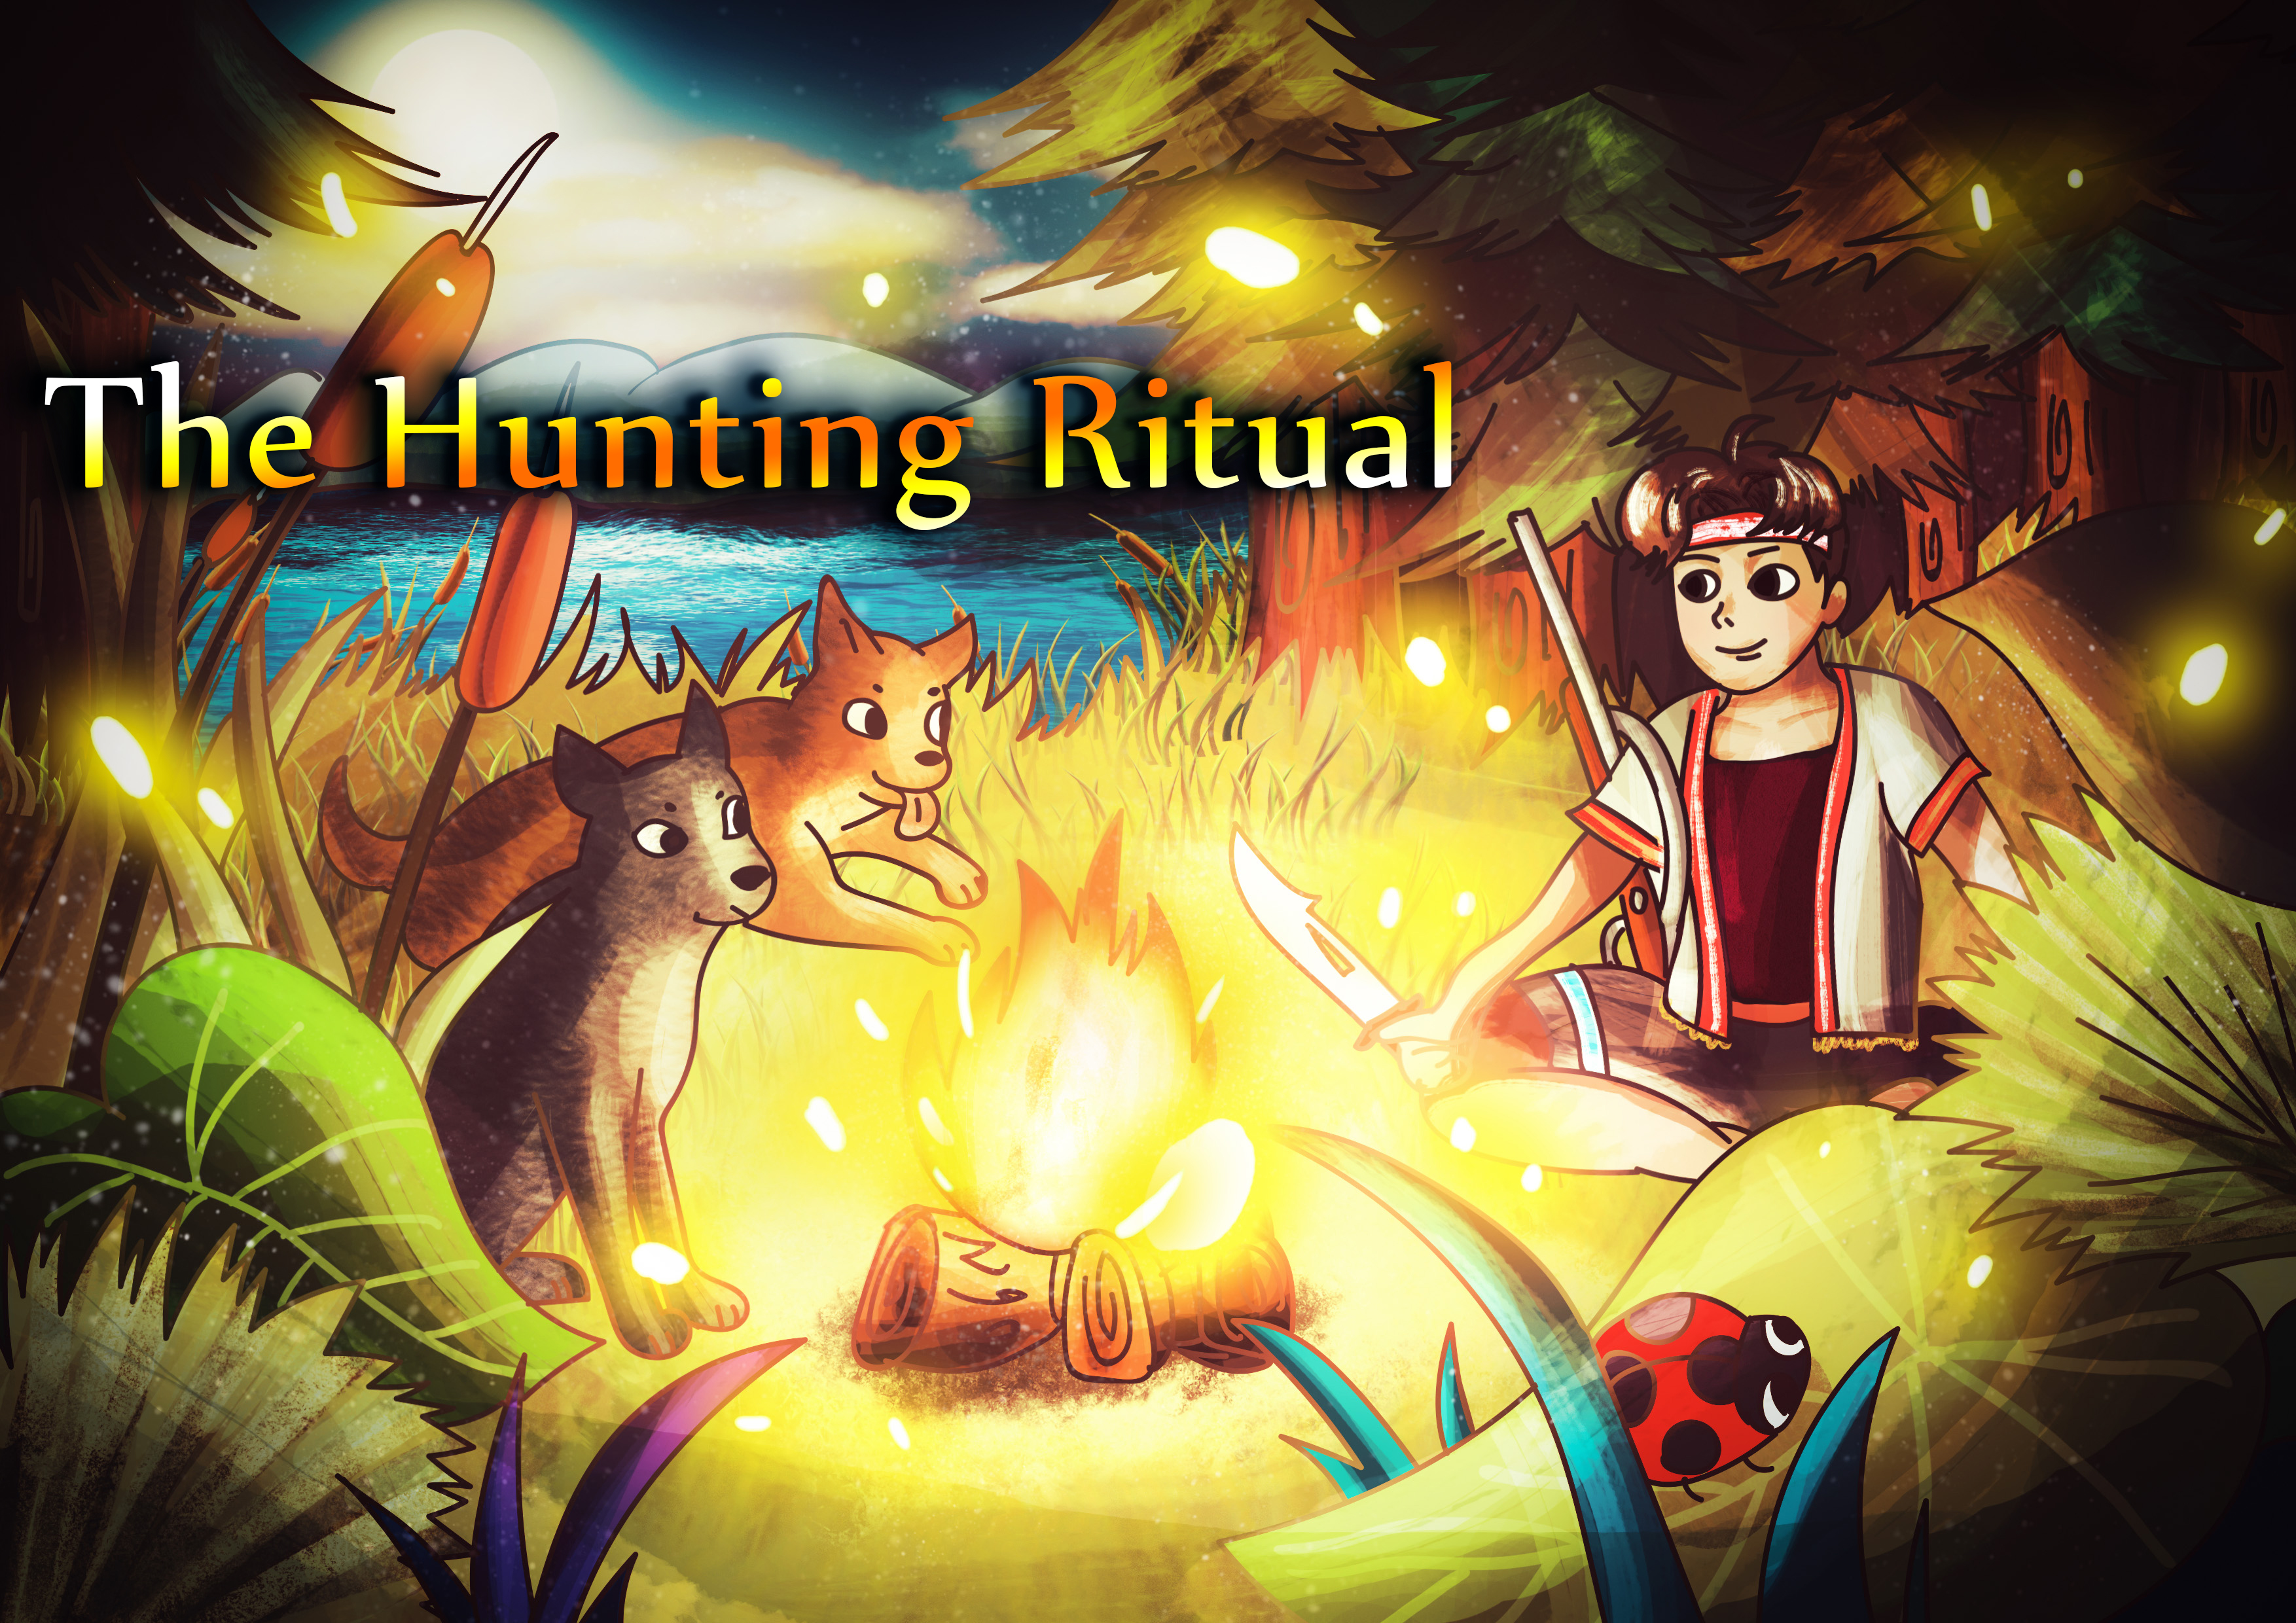 The Hunting Ritual